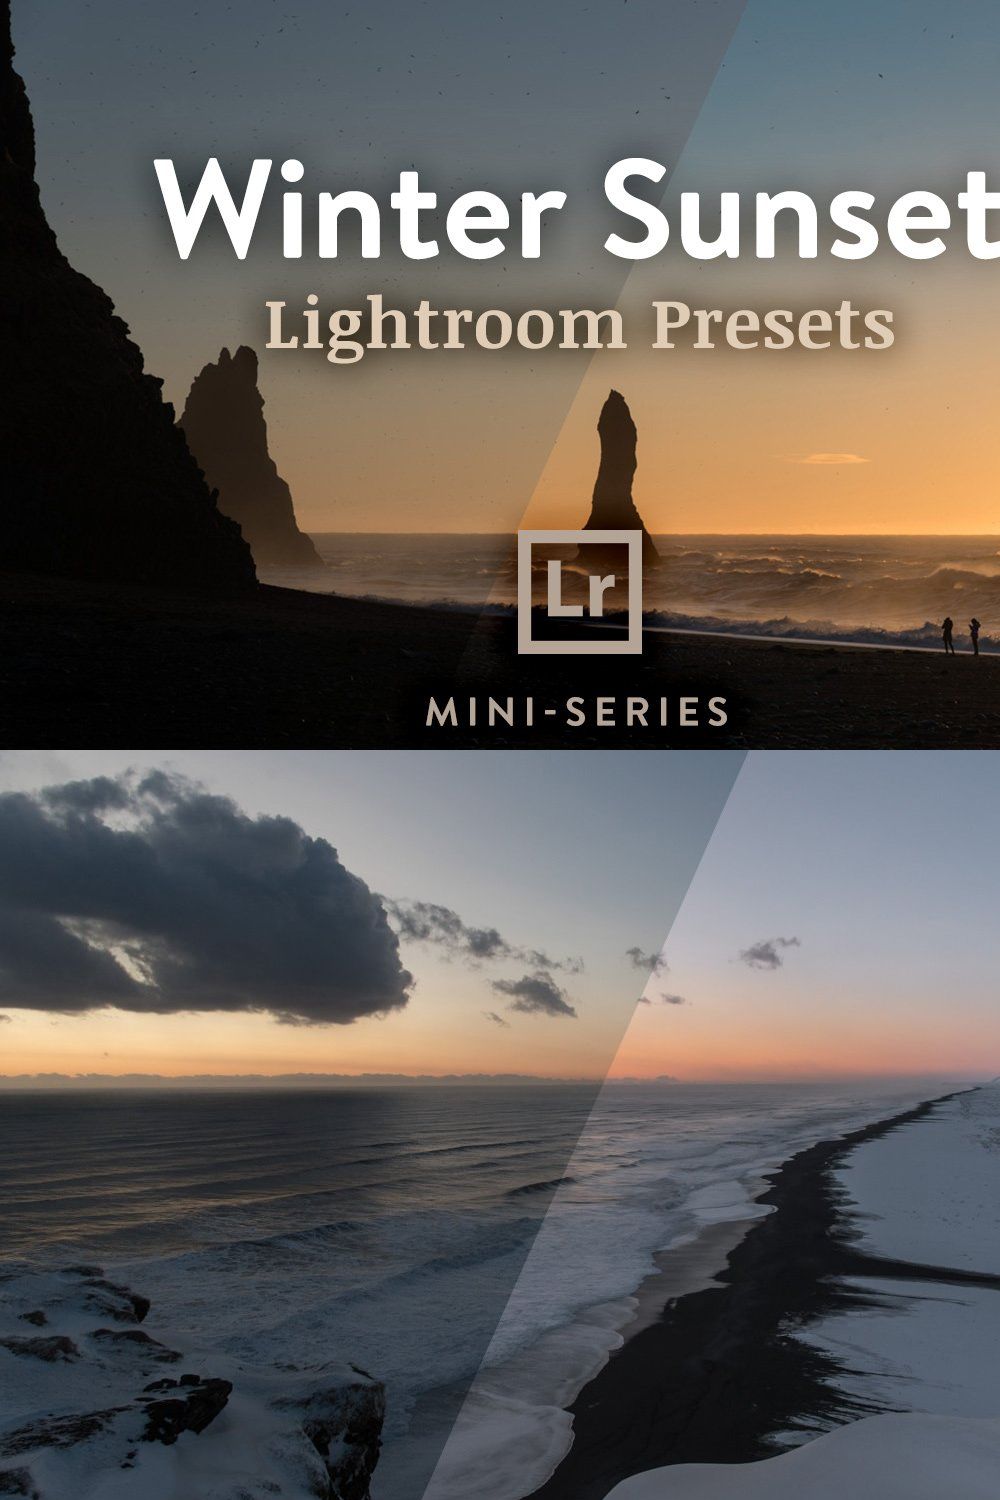 3 Lightroom Presets - Winter Sunset pinterest preview image.